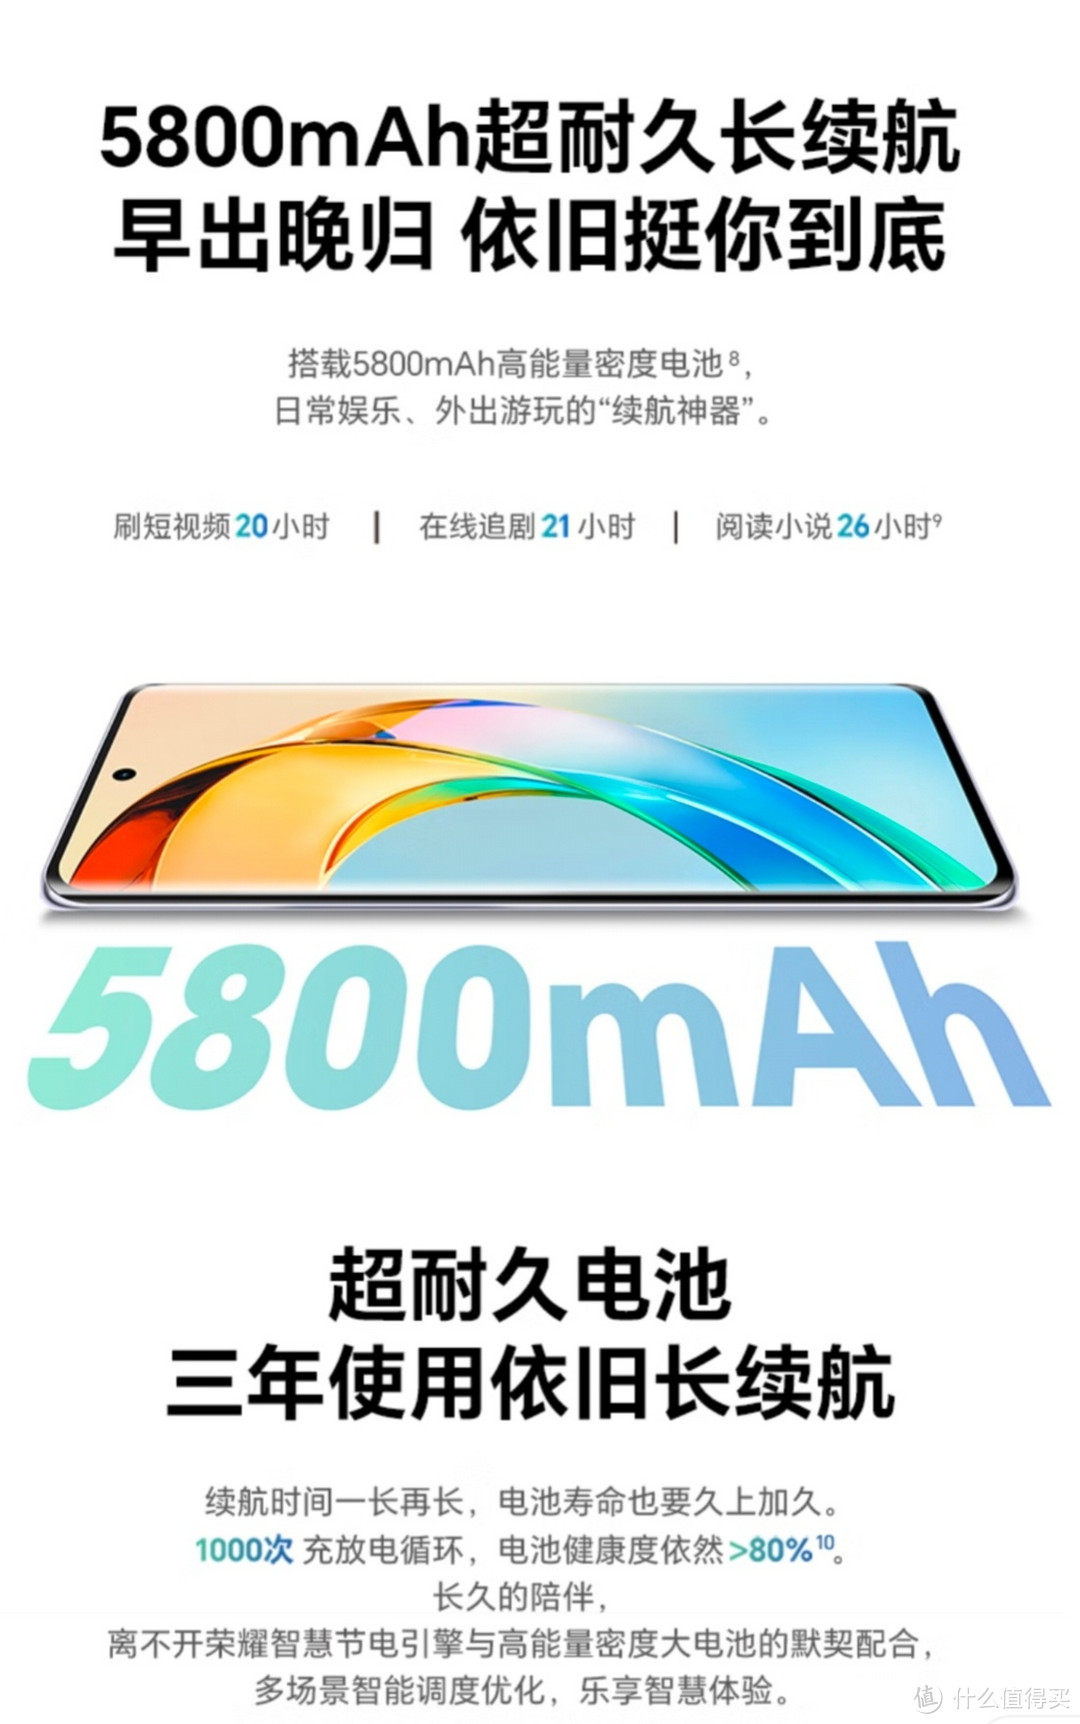 荣耀X50 第一代骁龙6芯片 1.5K超清护眼硬核曲屏 5800mAh超耐久大电池 5G手机 12GB+256GB 勃朗蓝